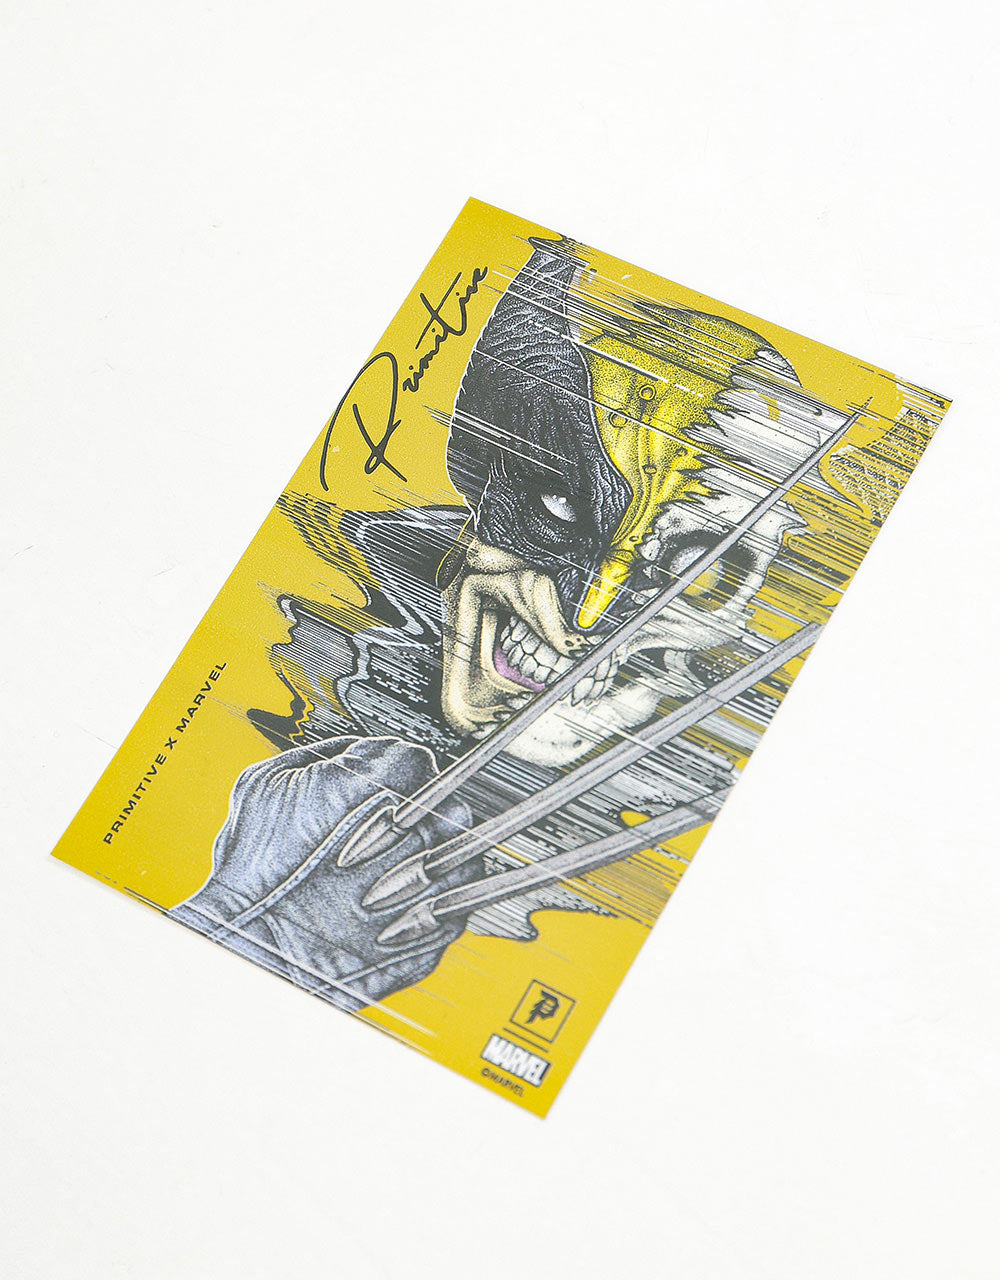 Primitive x Marvel x Paul Jackson Wolverine Foil Sticker